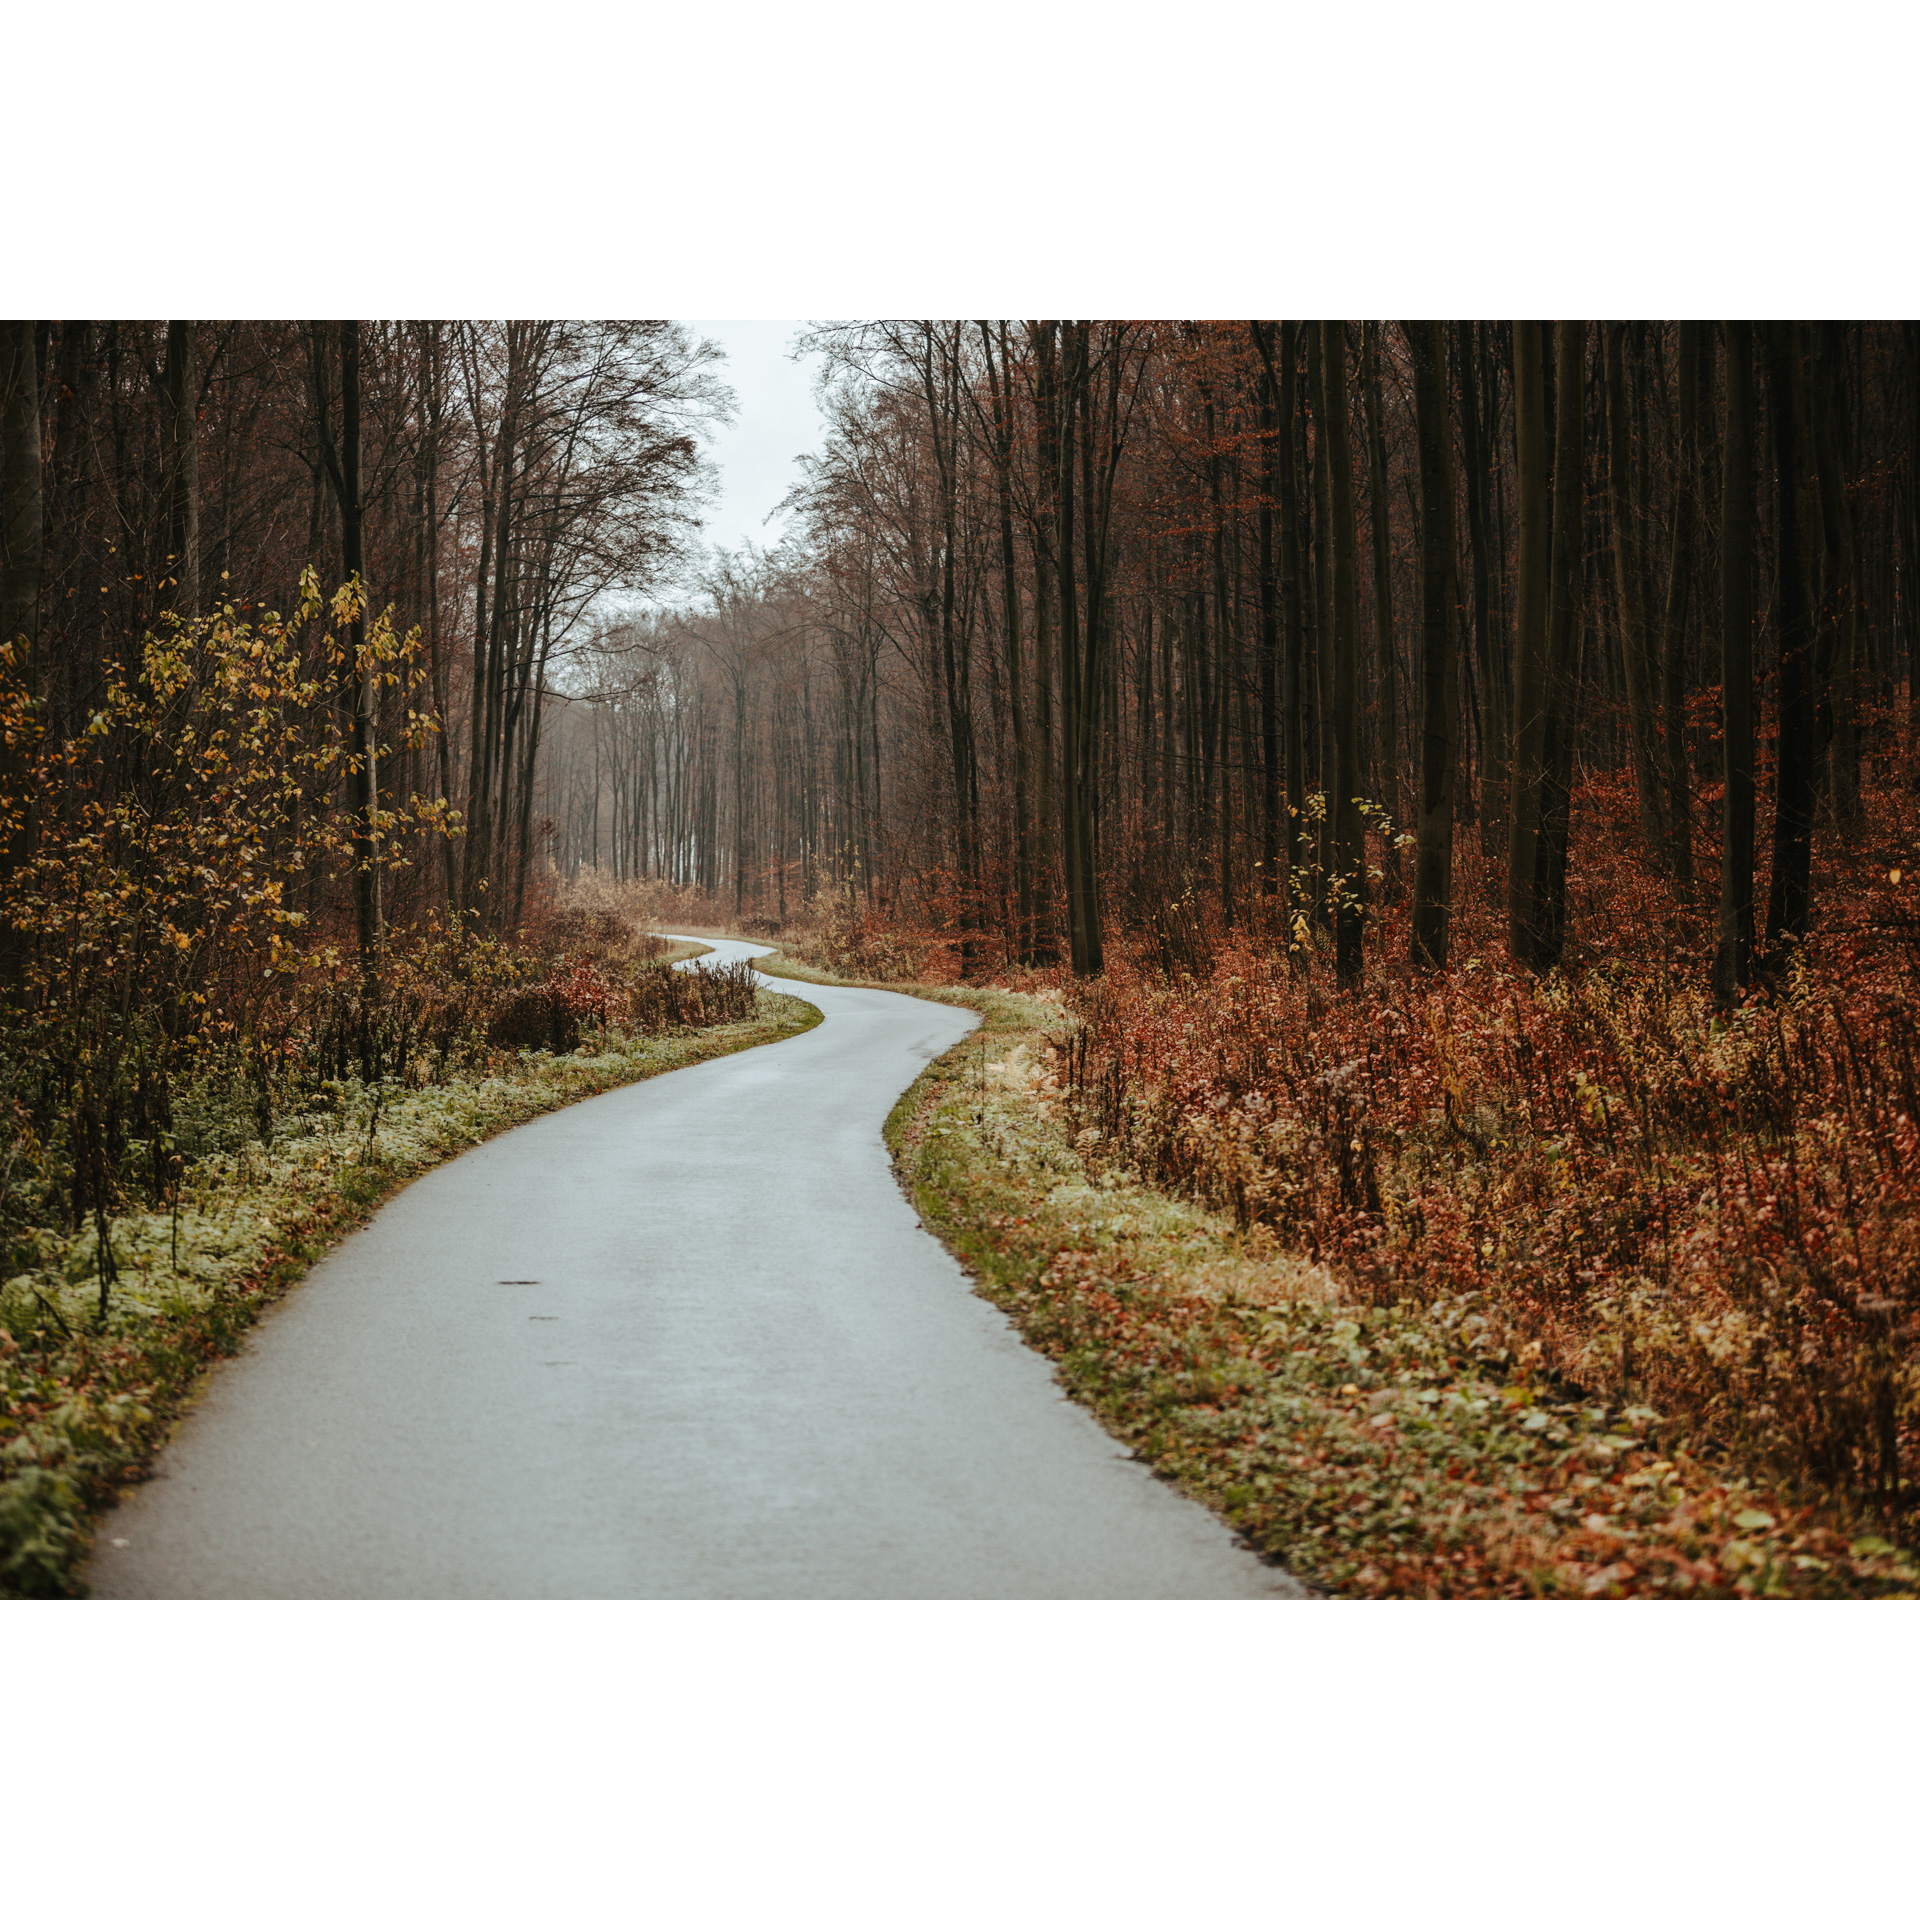 Kręta leśna droga asfaltowa biegnąca wśród rudo-brązowych drzew